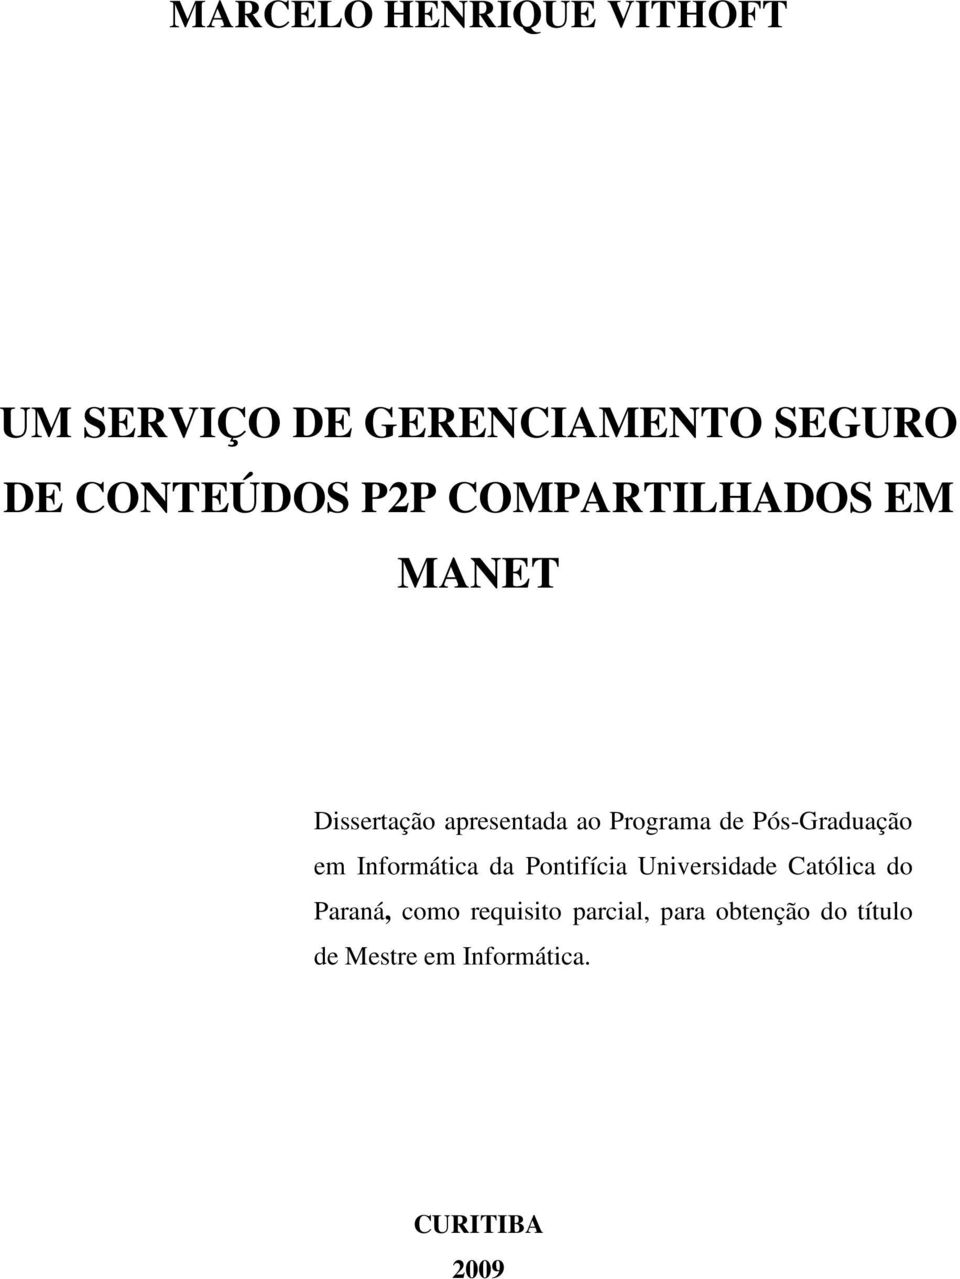 Pós-Graduação em Informática da Pontifícia Universidade Católica do Paraná,